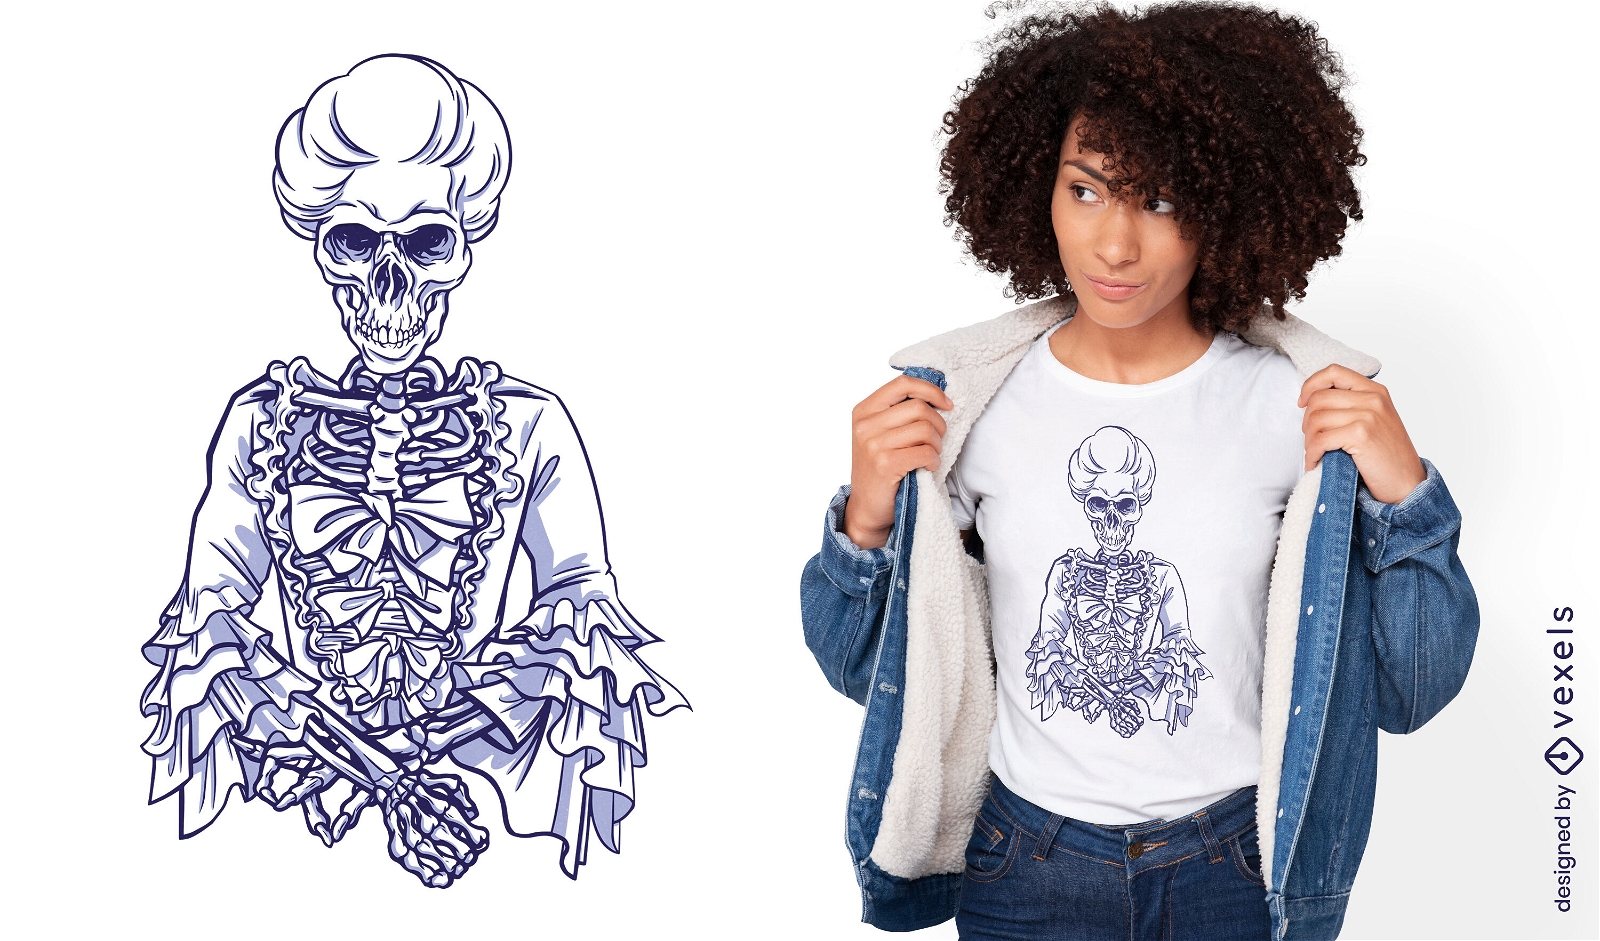 Dise?o de camiseta de mujer medieval esqueleto.